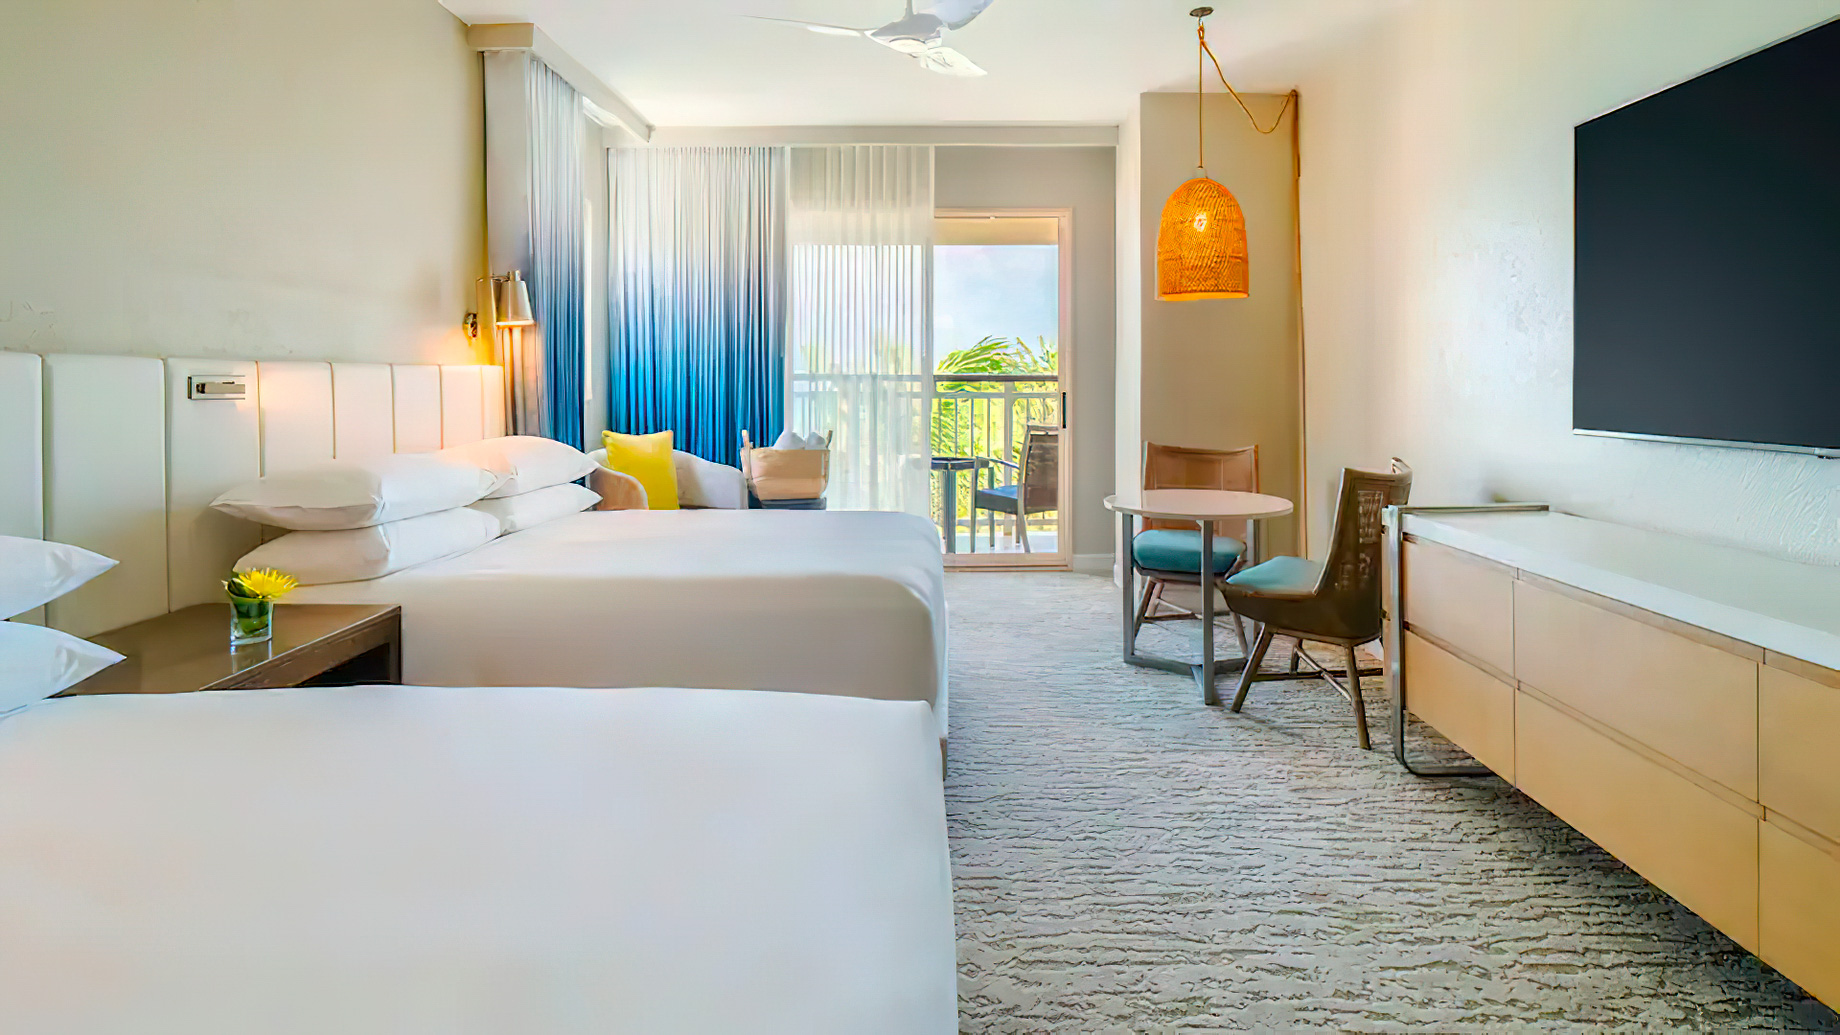 Hyatt Regency Aruba Resort & Casino – Noord, Aruba – 2 Queens Resort View with Balcony